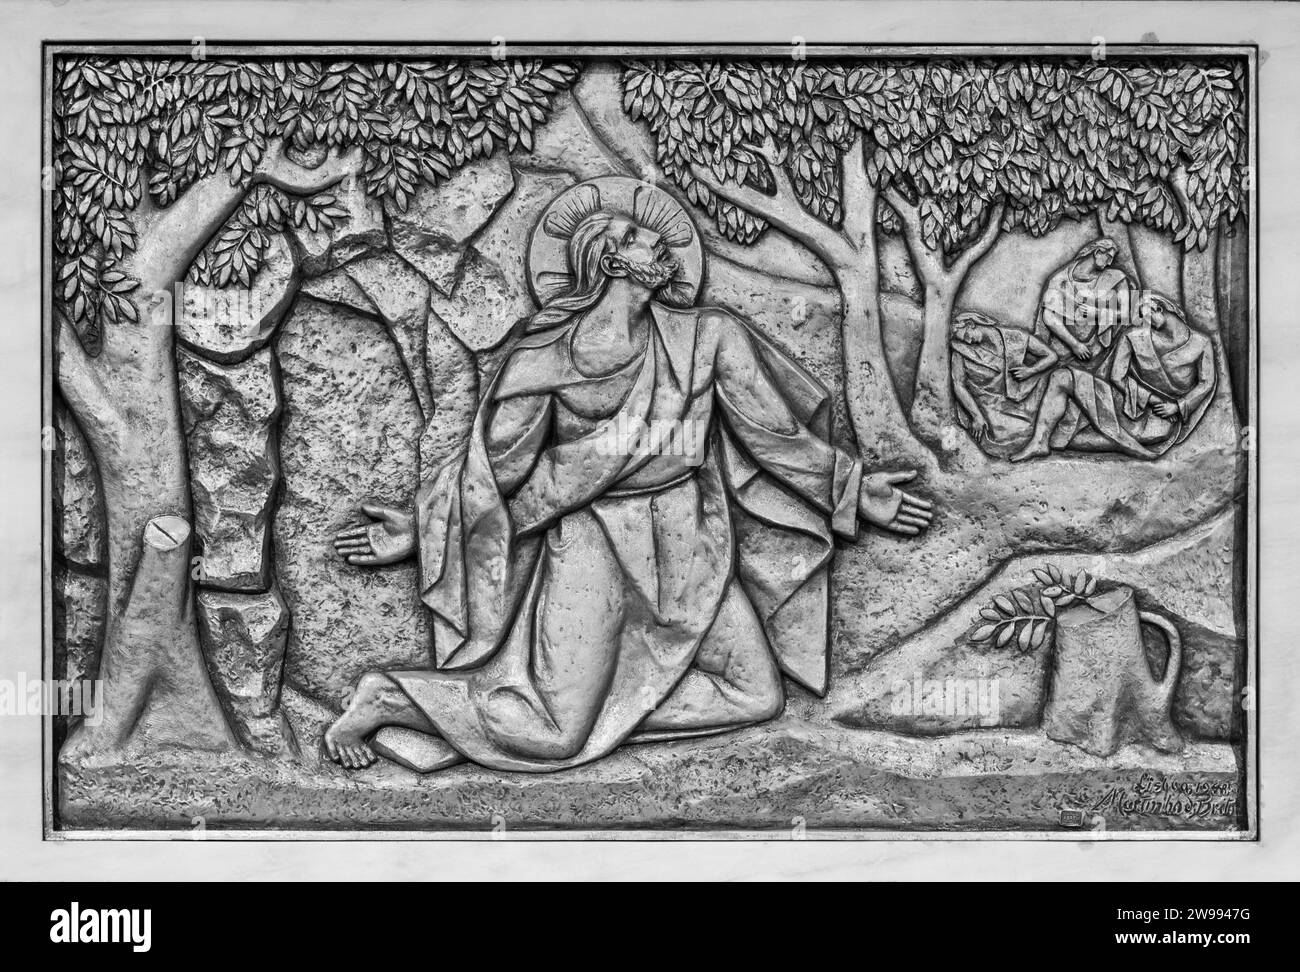 L'agonia nel giardino - il primo mistero doloroso. Una scultura in rilievo nella Basilica di nostra Signora del Rosario di Fatima a Fatima, Portogallo. Foto Stock